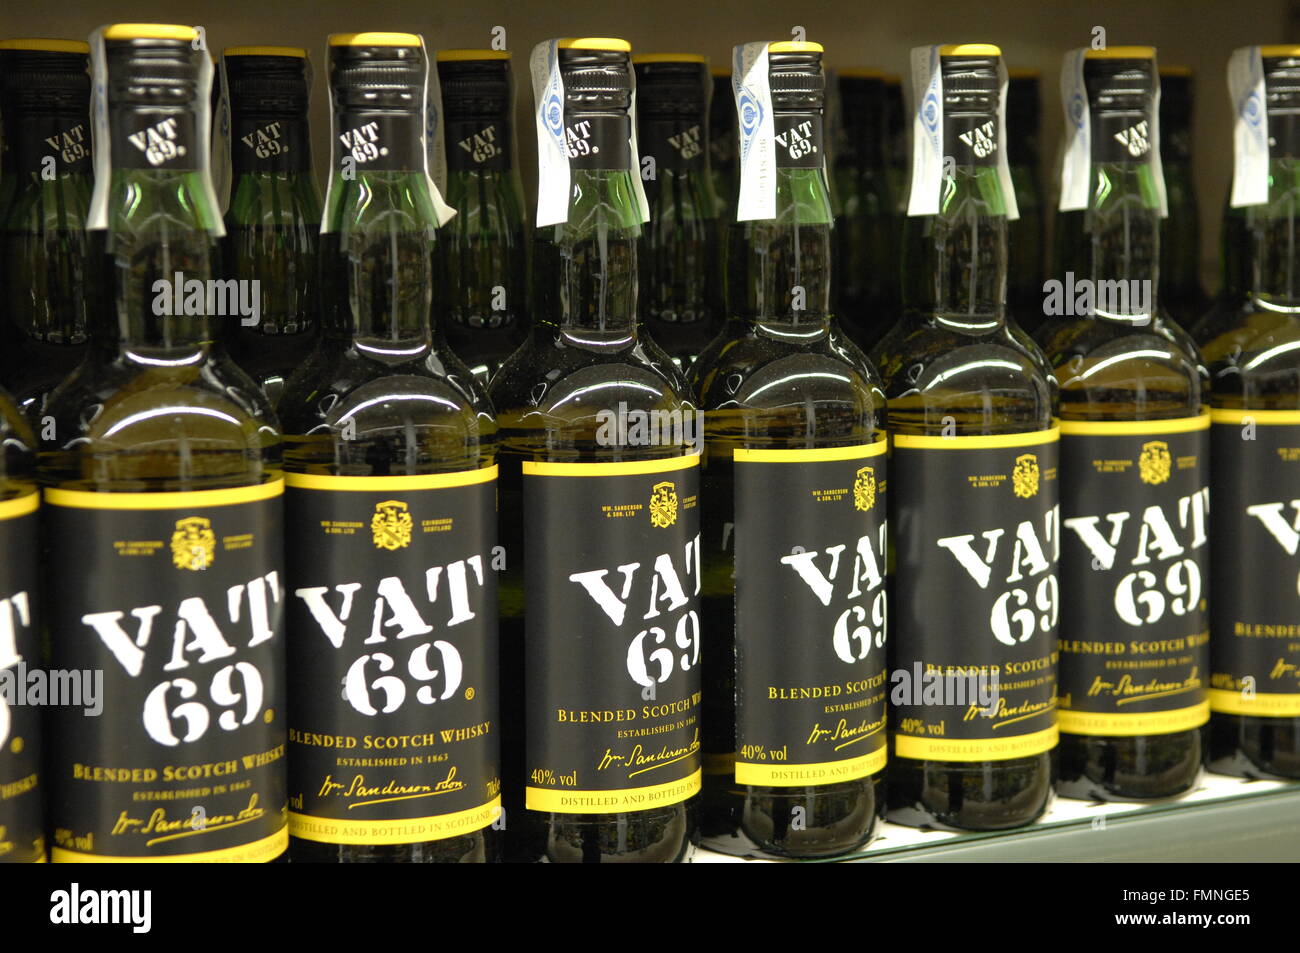 69 La TVA est un blended Scotch whisky administré par Diageo.affiché sur l'écart en supermarché. Banque D'Images